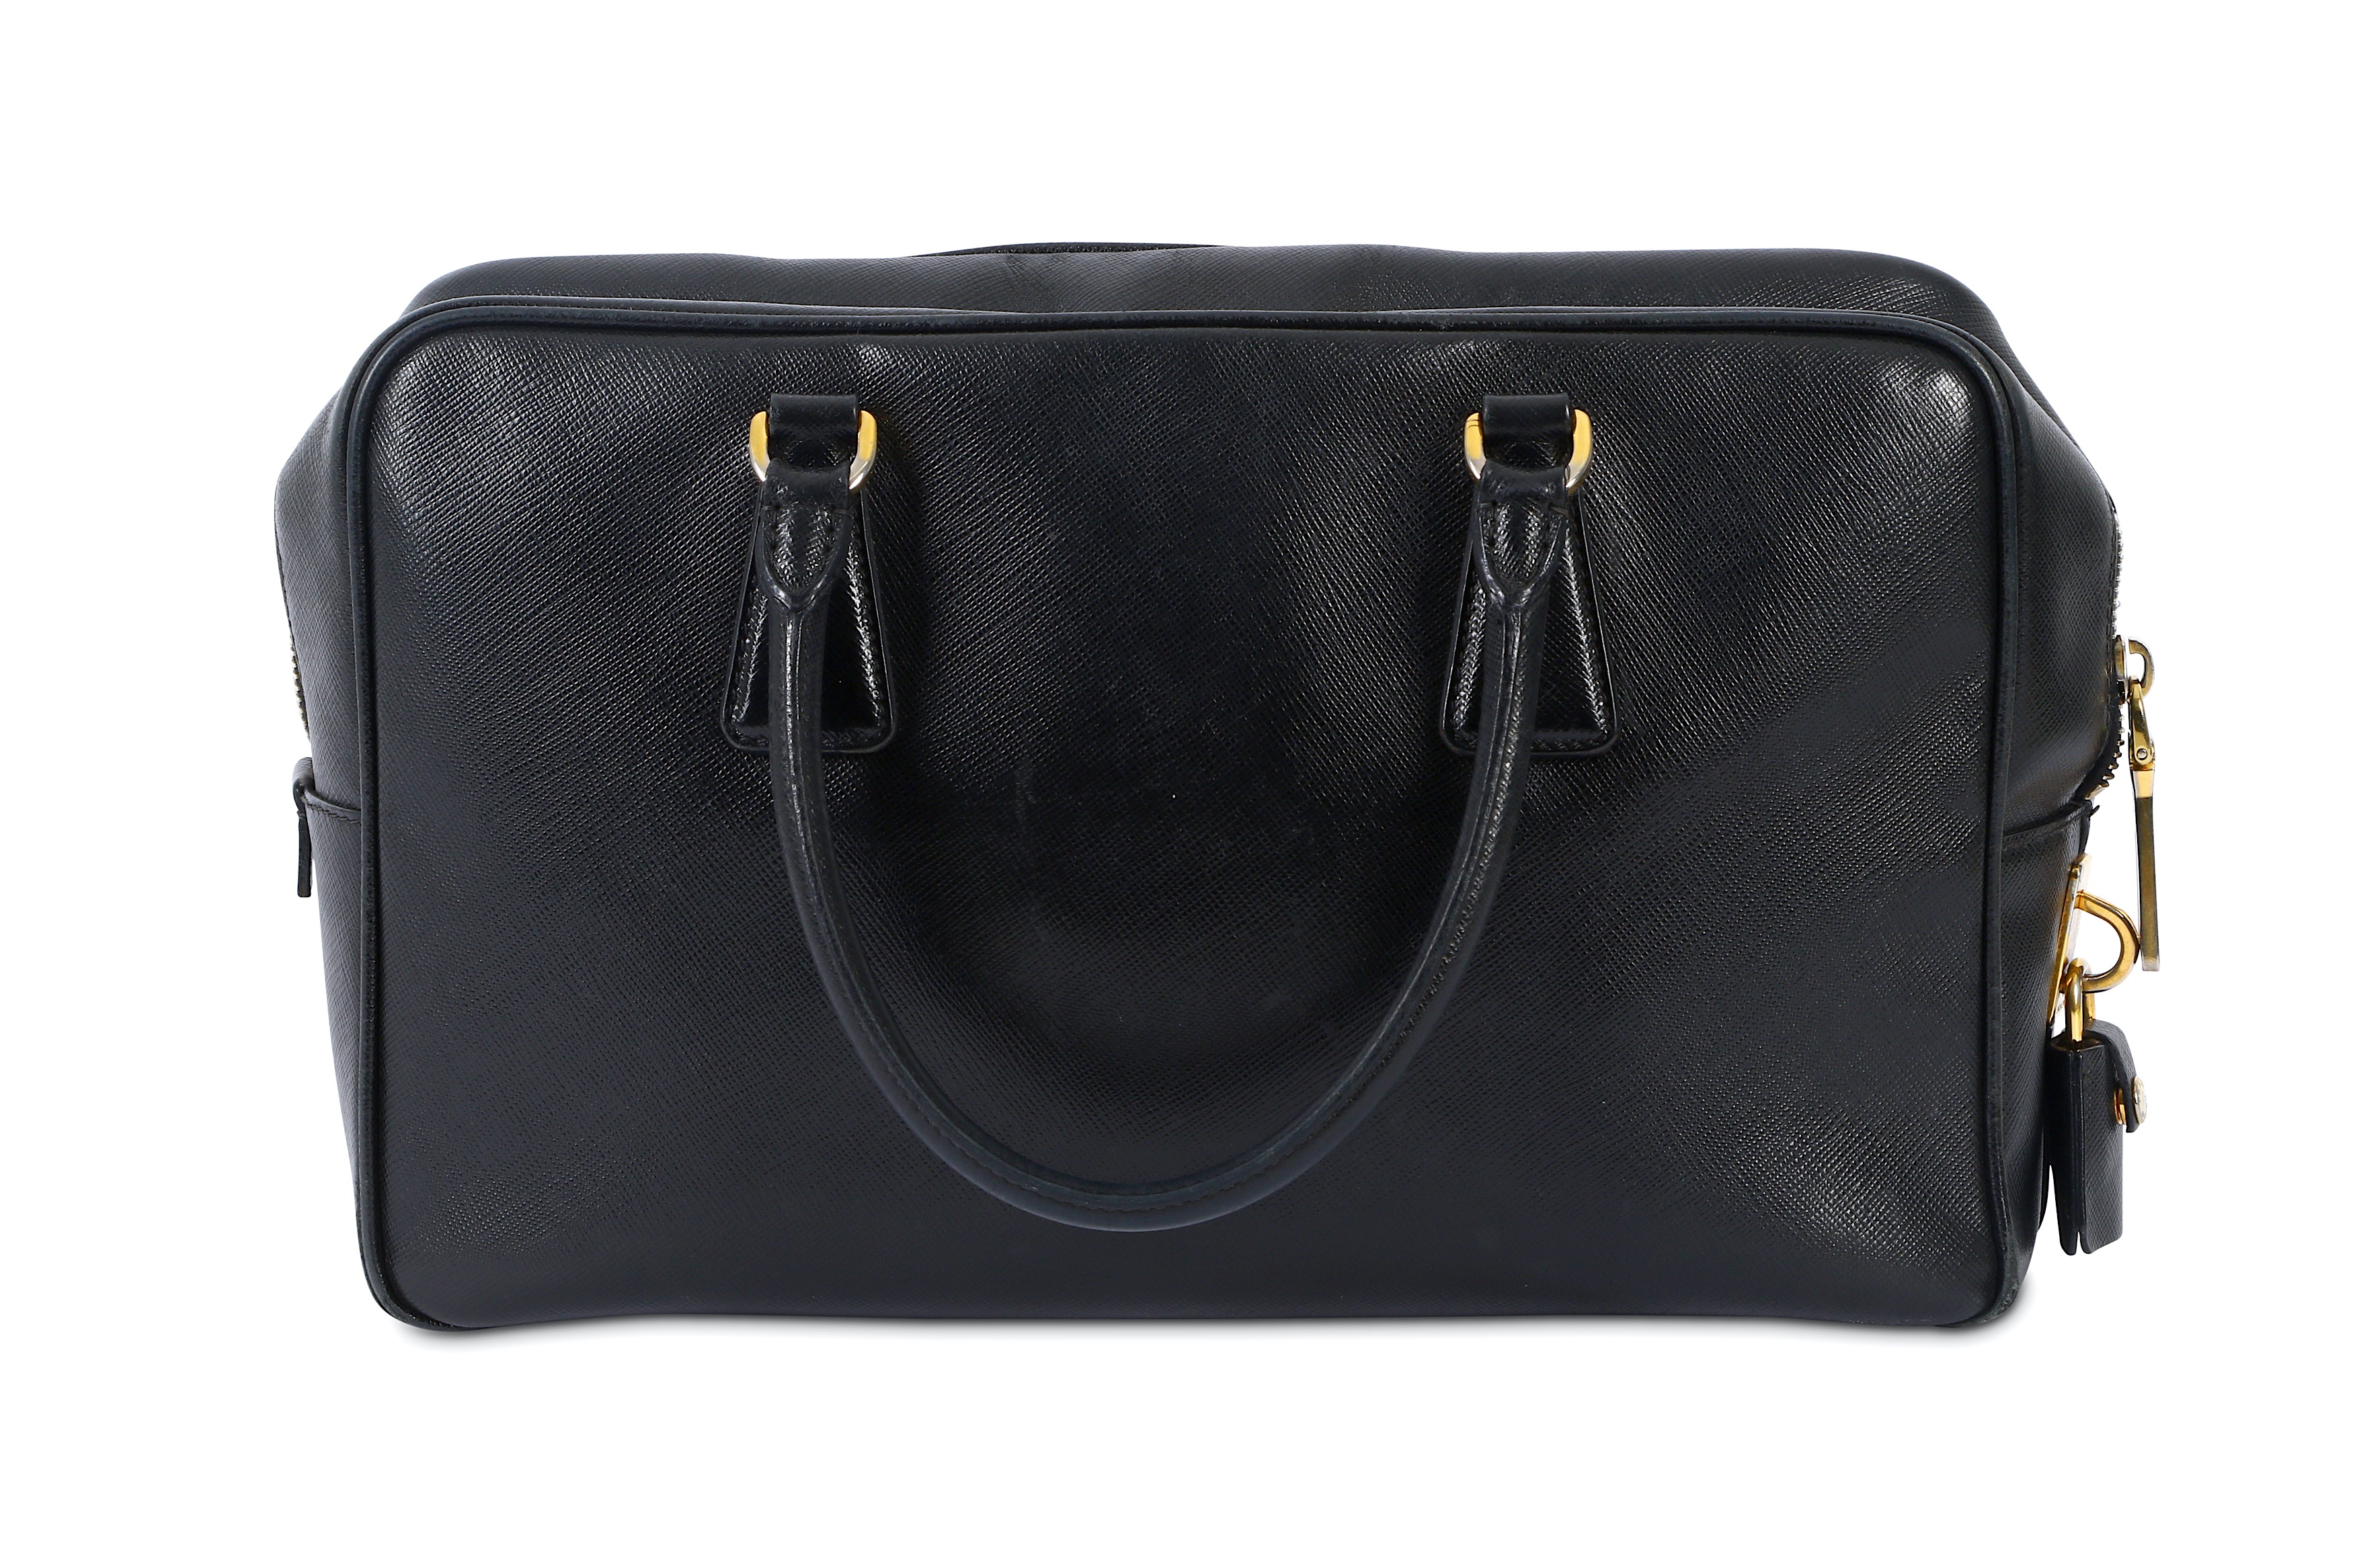 Prada Saffiano Nero Handbag - Image 3 of 8